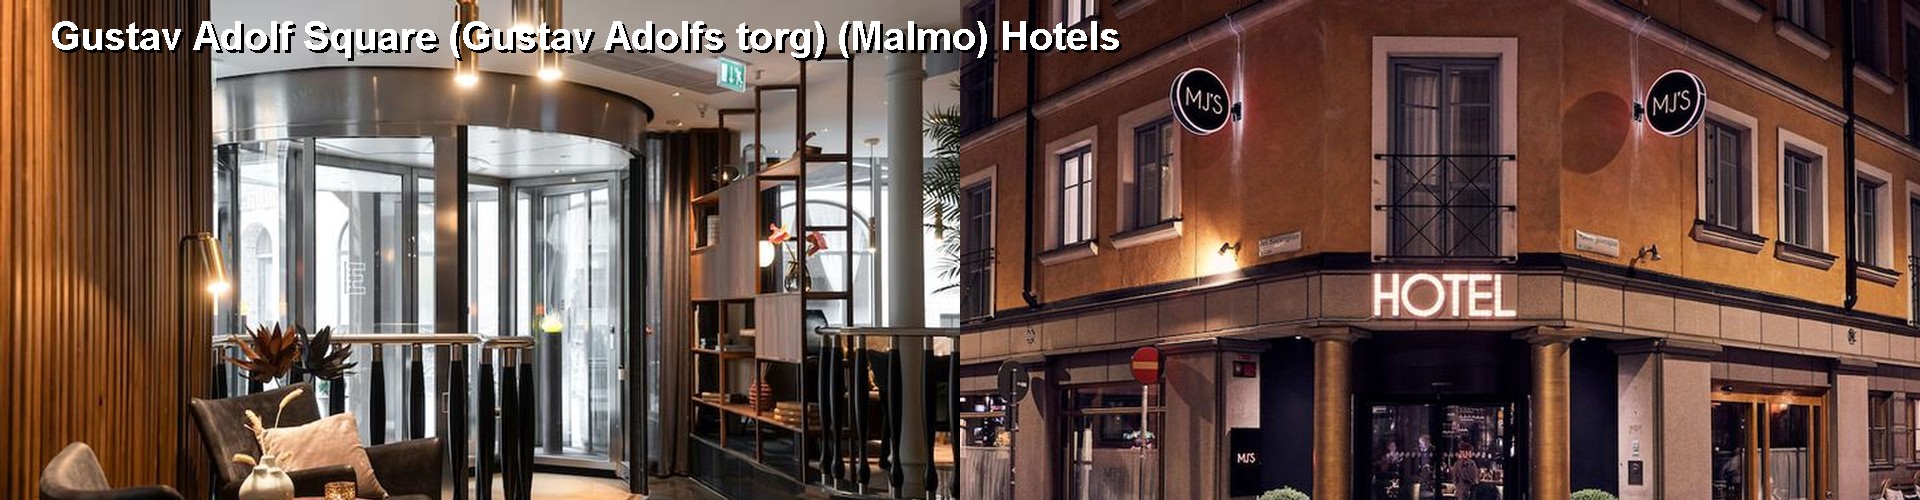 5 Best Hotels near Gustav Adolf Square (Gustav Adolfs torg) (Malmo)